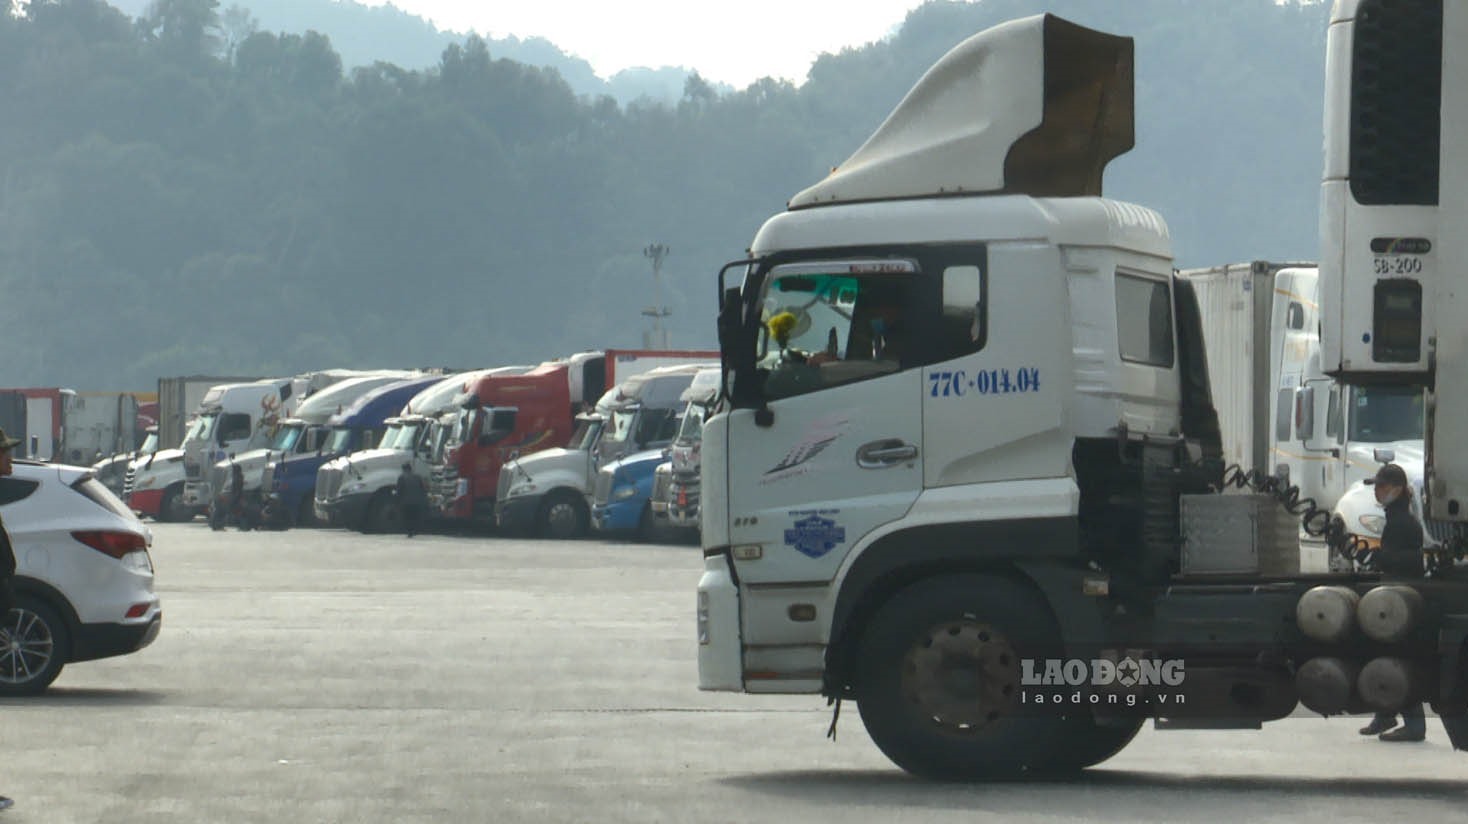 Sáng 8.1, là ngày đầu tiên tại các cửa khẩu Lạng Sơn thực hiện quy trình xuất nhập khẩu và xuất nhập cảnh mới thực hiện quy trình để thích ứng với biện pháp phòng, chống dịch COVID-19 của phía Trung Quốc.